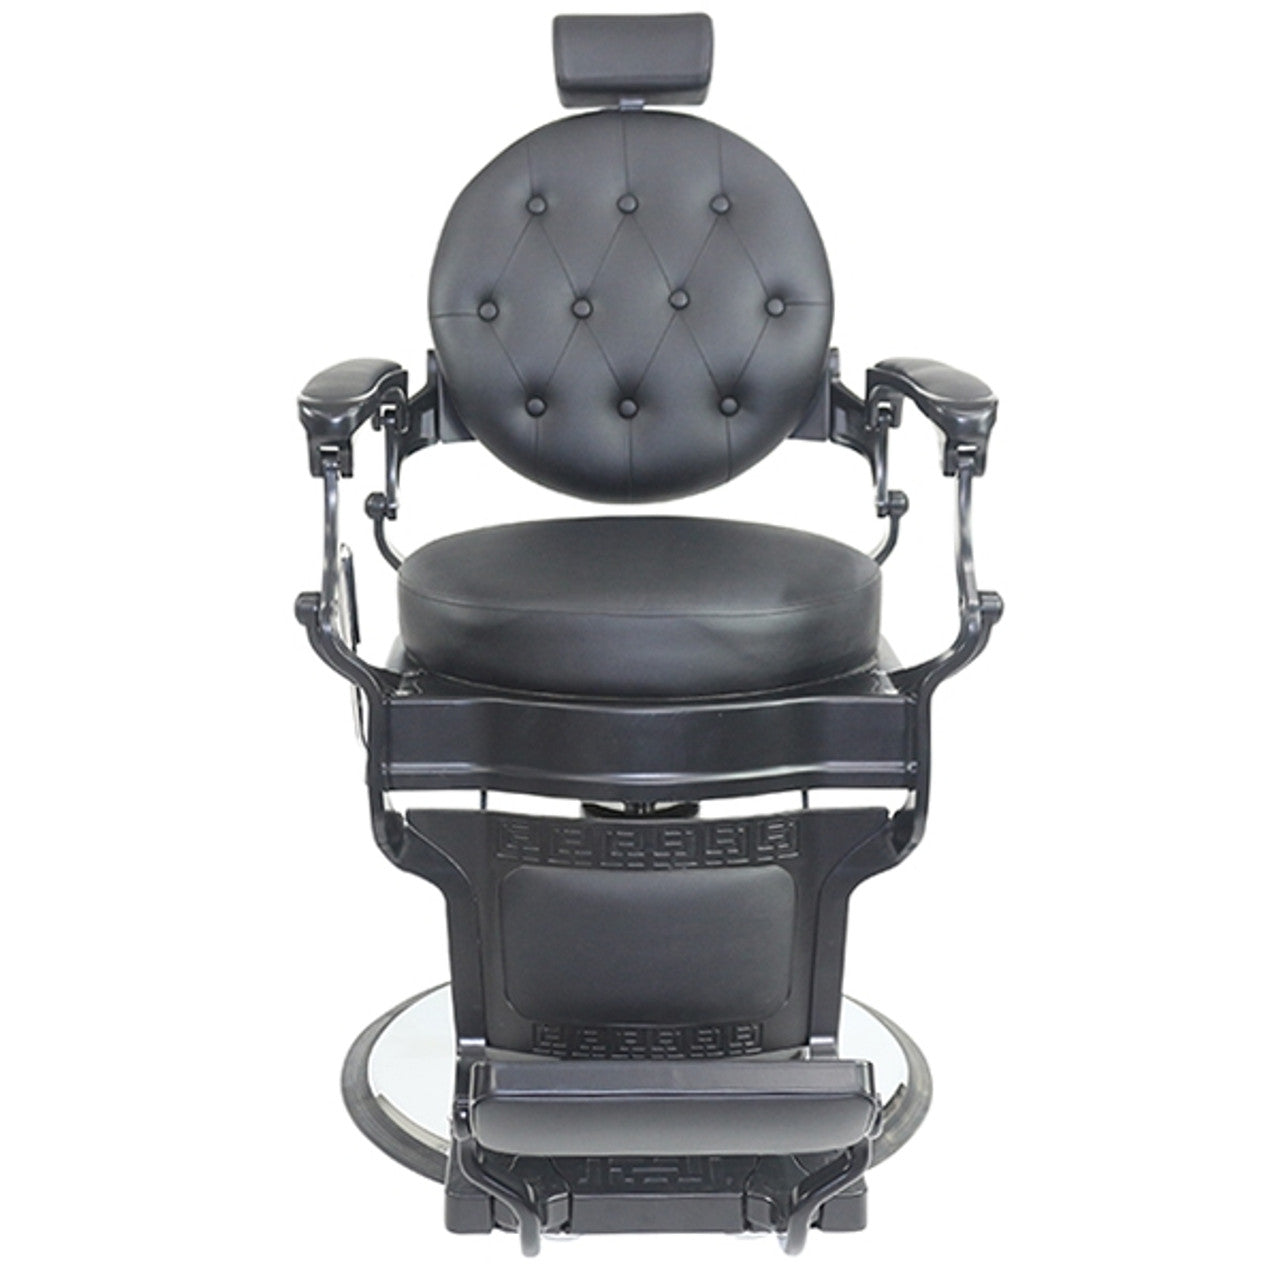 Joiken Harlem Barber Chair - Black